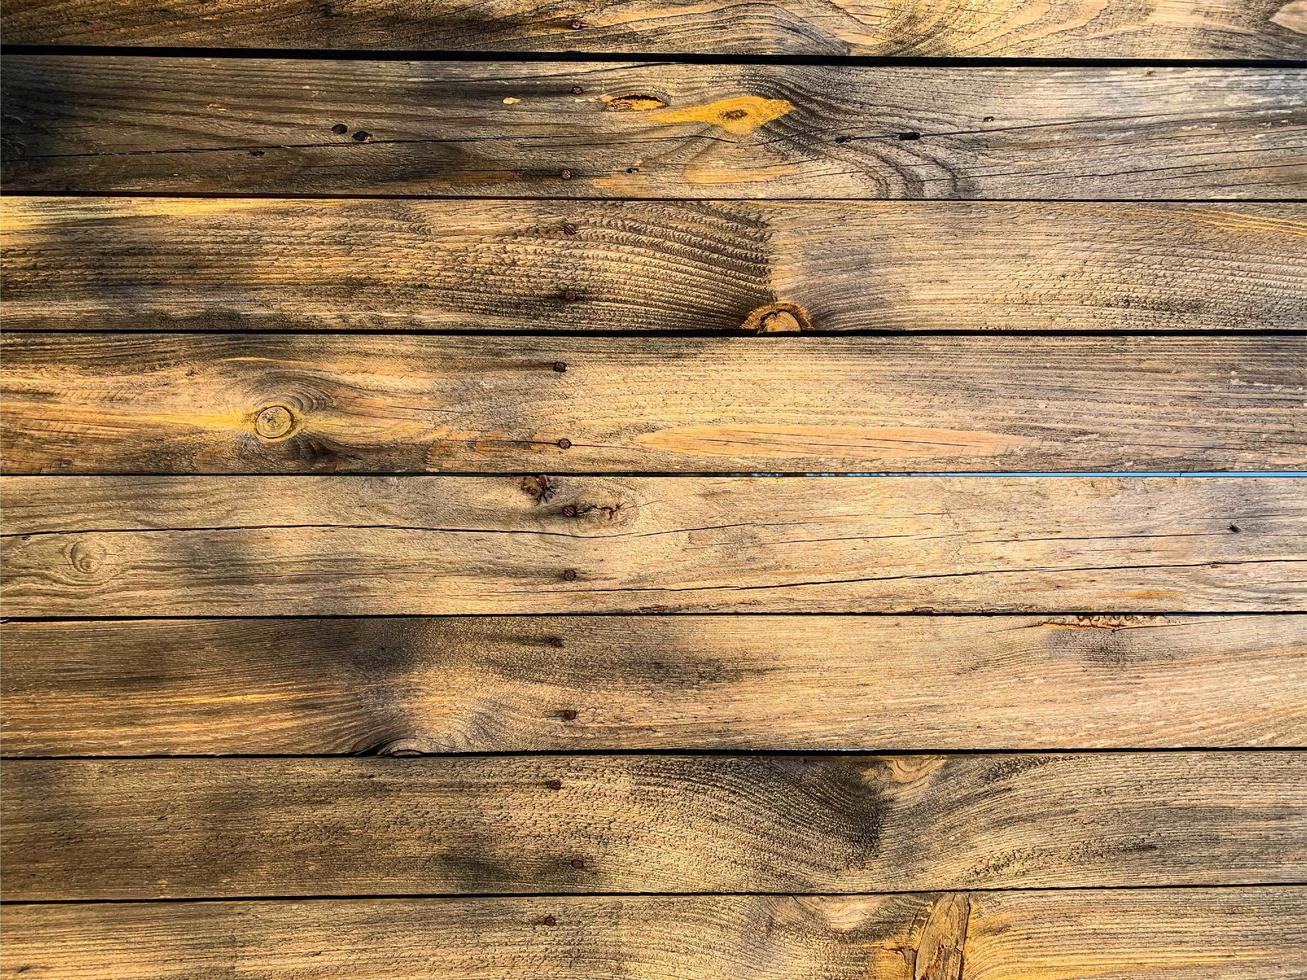 sfondo muro di legno. sfondo di recinzione. tavolato in legno foto